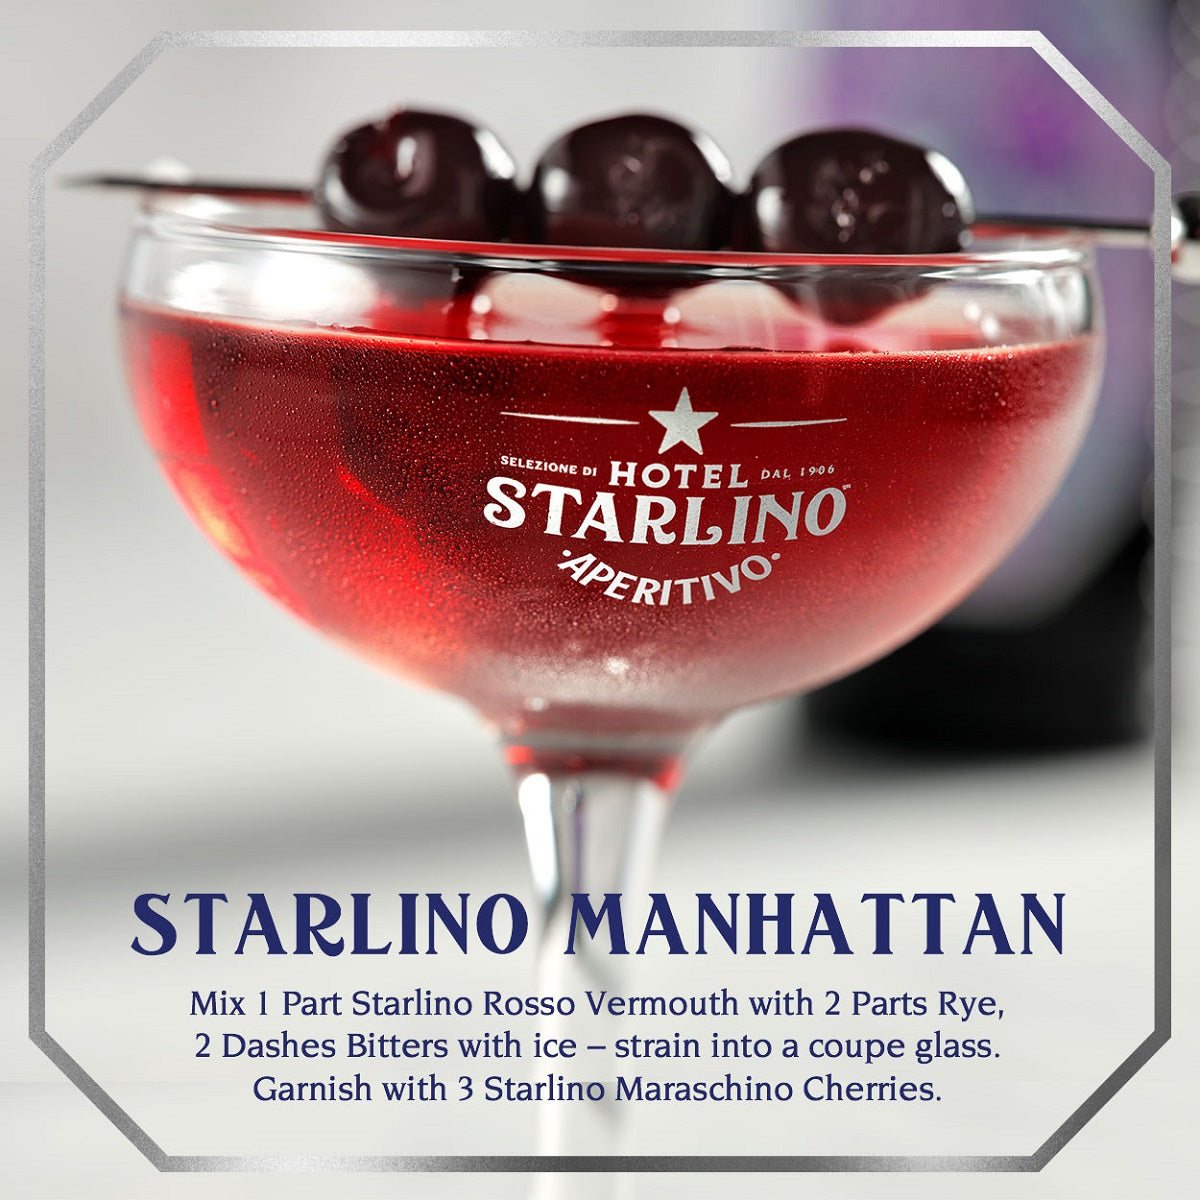 Hotel Starlino Italian Maraschino Cherries, Set of 3 Glass Jars